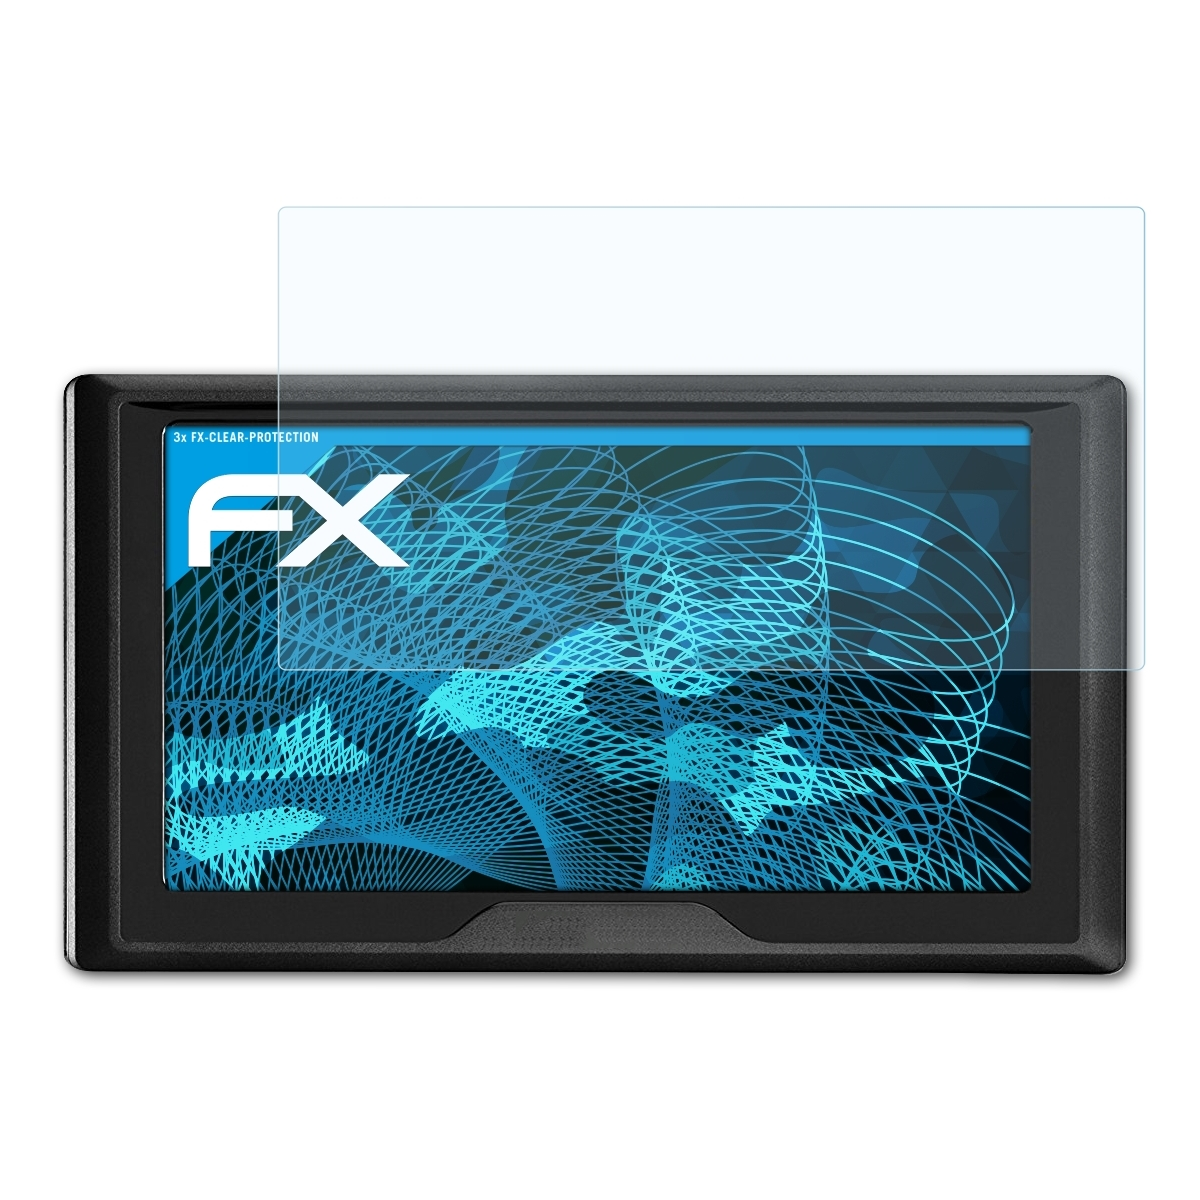 ATFOLIX 3x FX-Clear Displayschutz(für LMT-S) 51 Drive Garmin